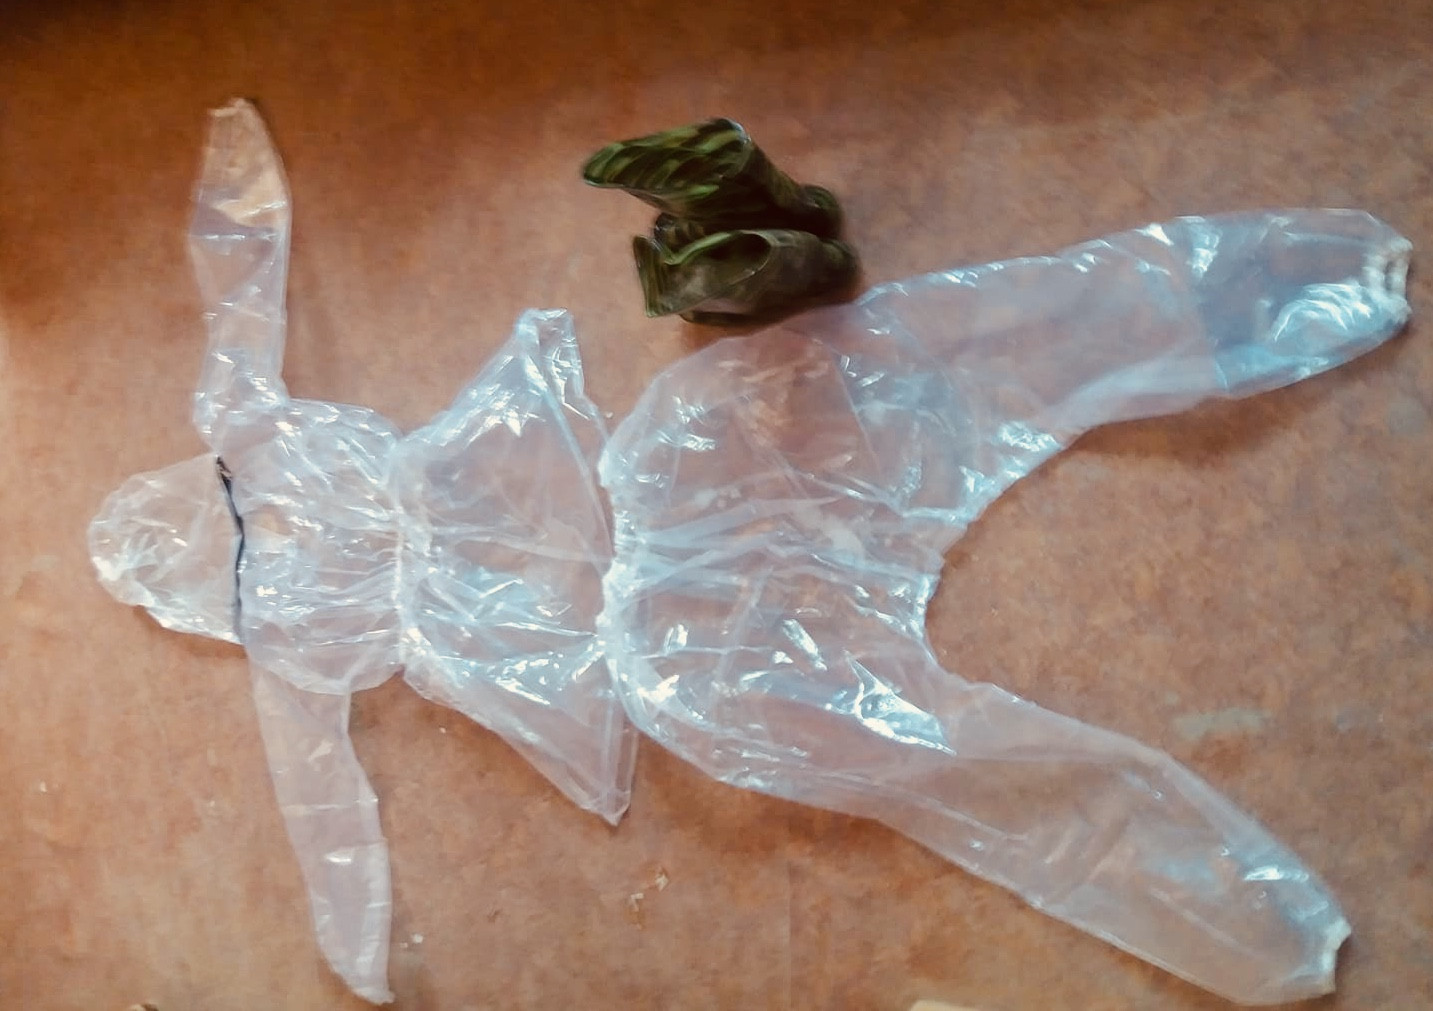 बझाङको जय पृथ्वी नगरपालिकाका स्वास्थ्यकर्मीले प्लास्टिक सिलाएर बनाएको पिपिई। तस्बिर स्रोत: जनकबहादुर सिंह